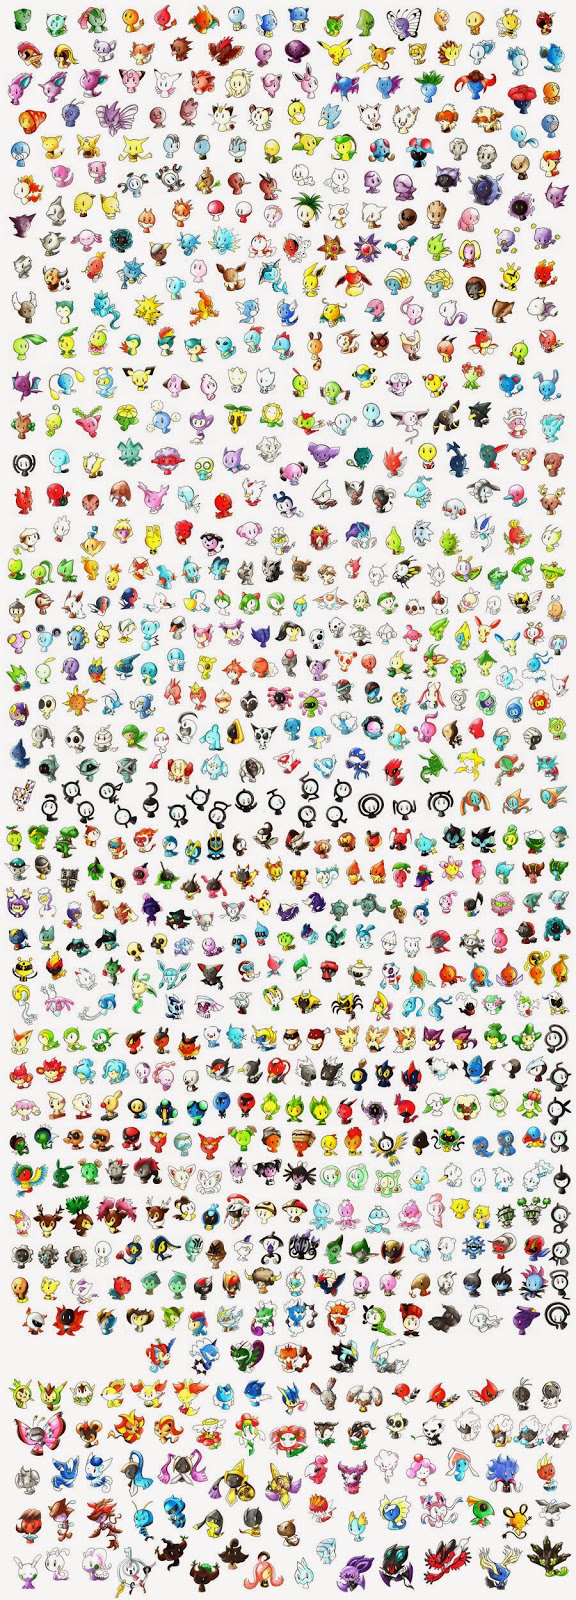 shiny pokemon sprite sheet